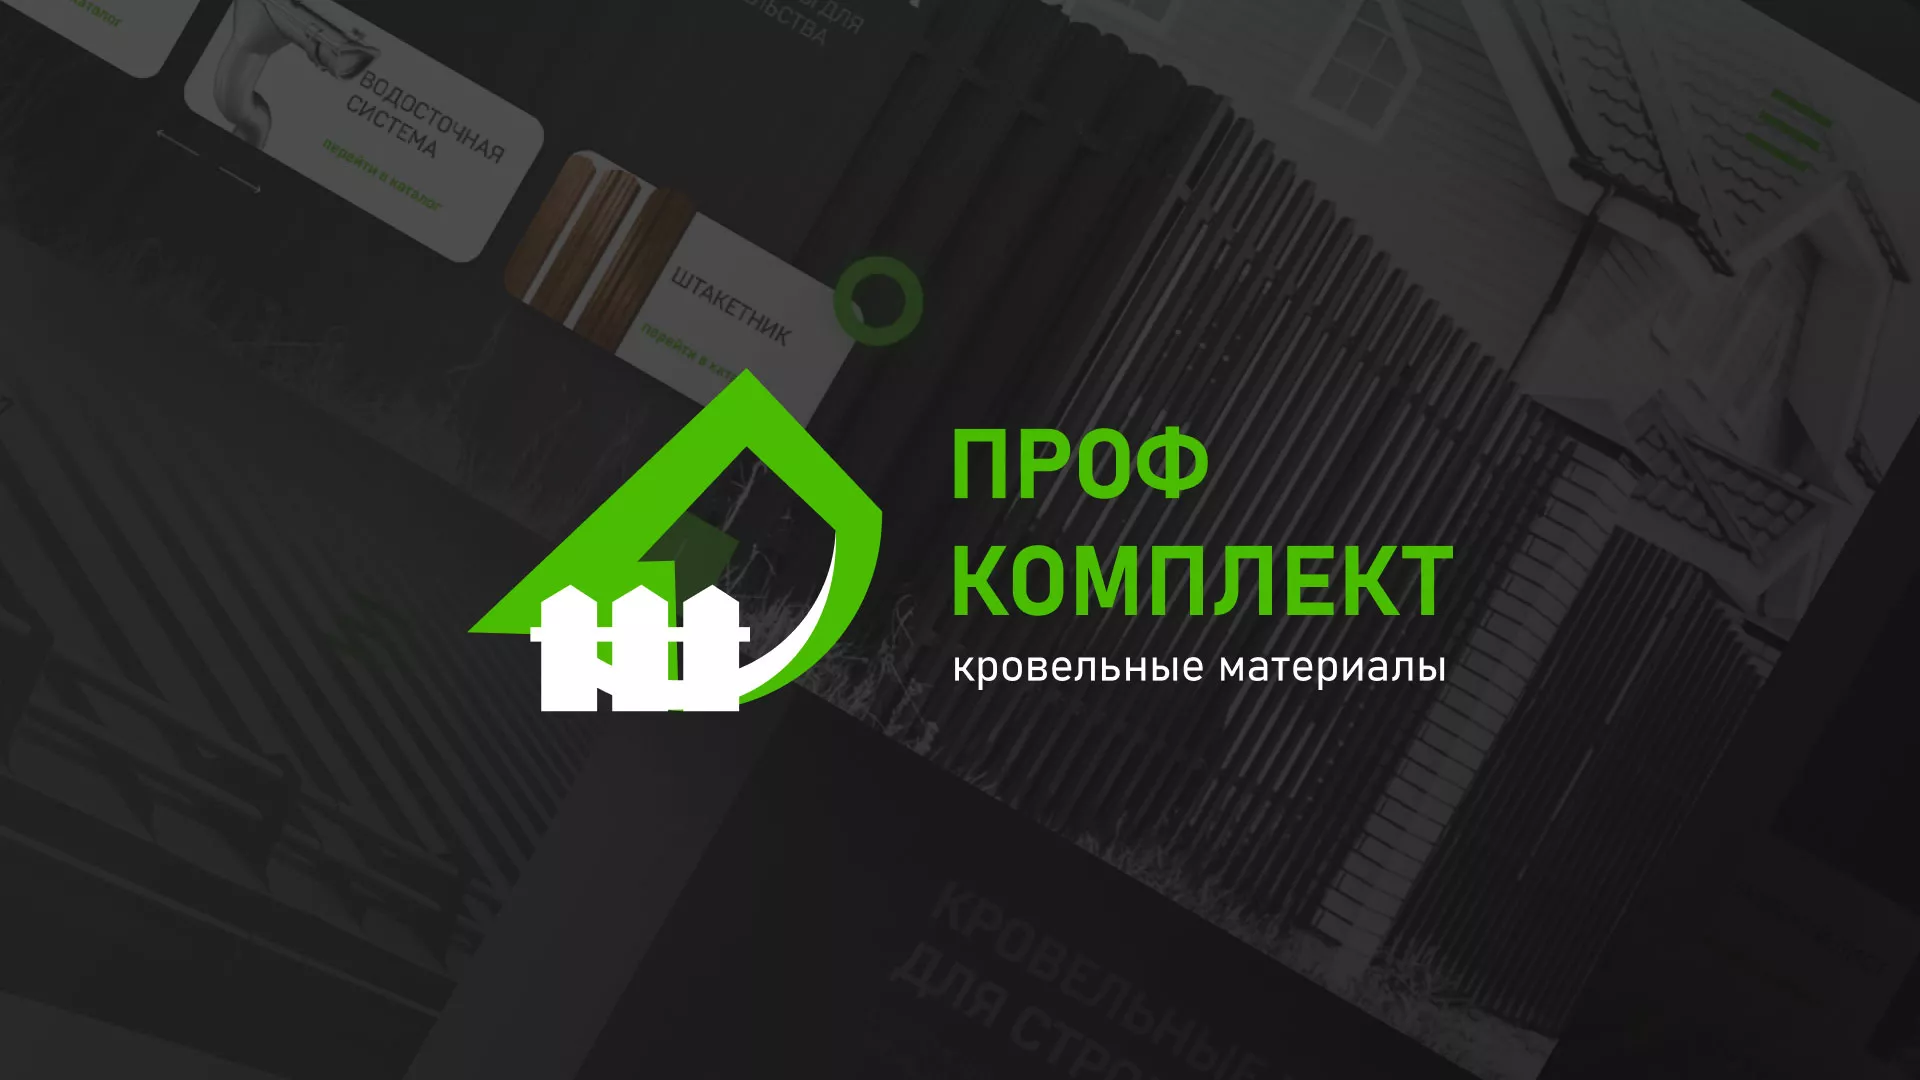 Создание сайта компании «Проф Комплект» в Пудоже